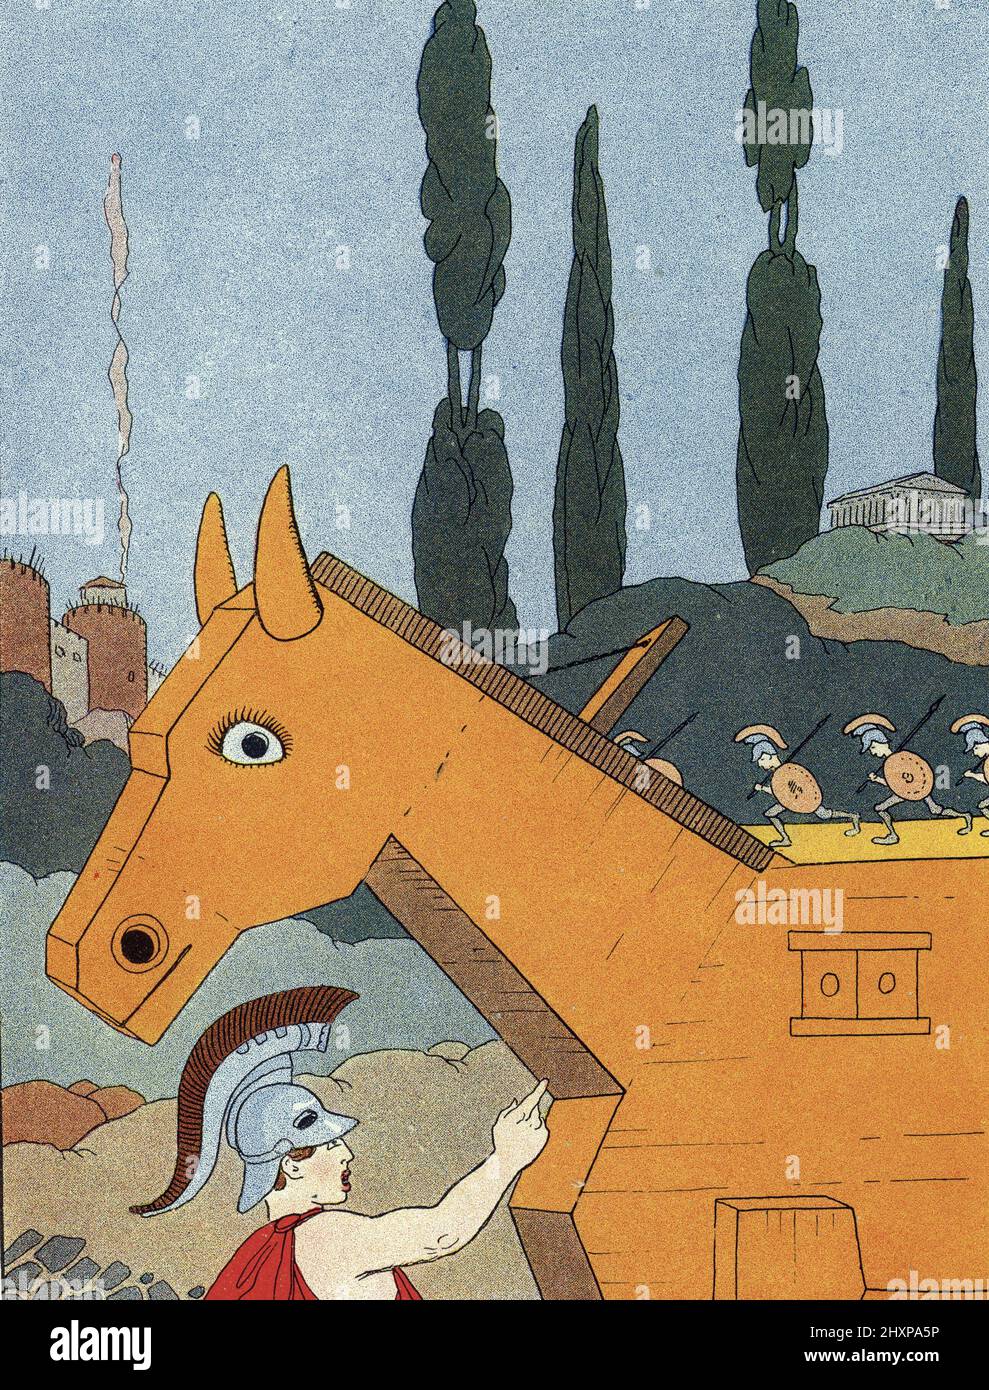 Mythologie grecque : representation du cheval de Troie (Trojanisches Pferd) Illustration de Benjamin Rabier (mort en 1939) pour 'les animaux mythologiques' 1926 Collection privee Stockfoto